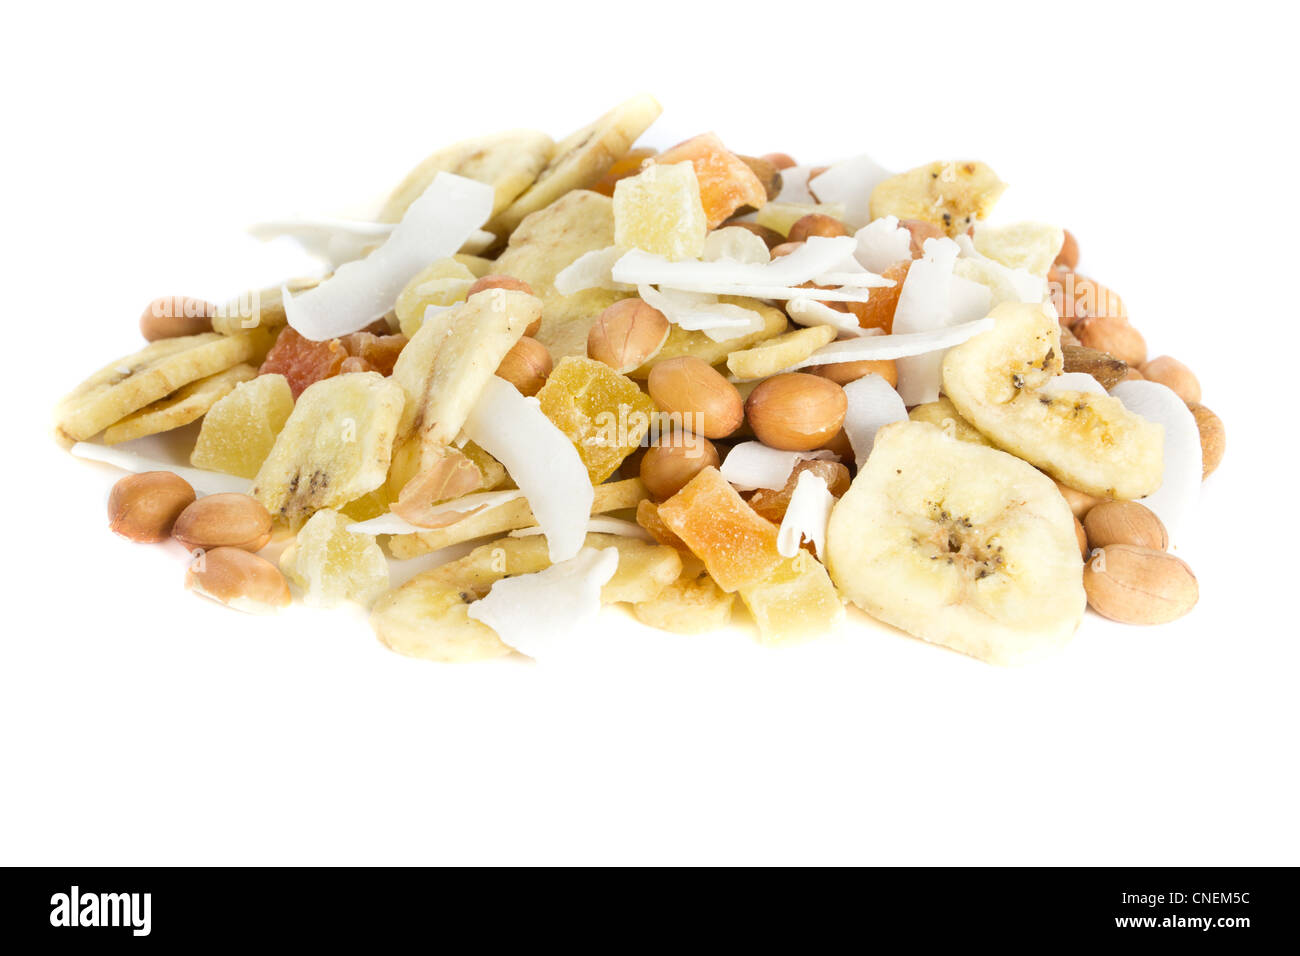 Bild von einem Haufen von Nüssen und getrockneten Früchten zusammen Stockfoto